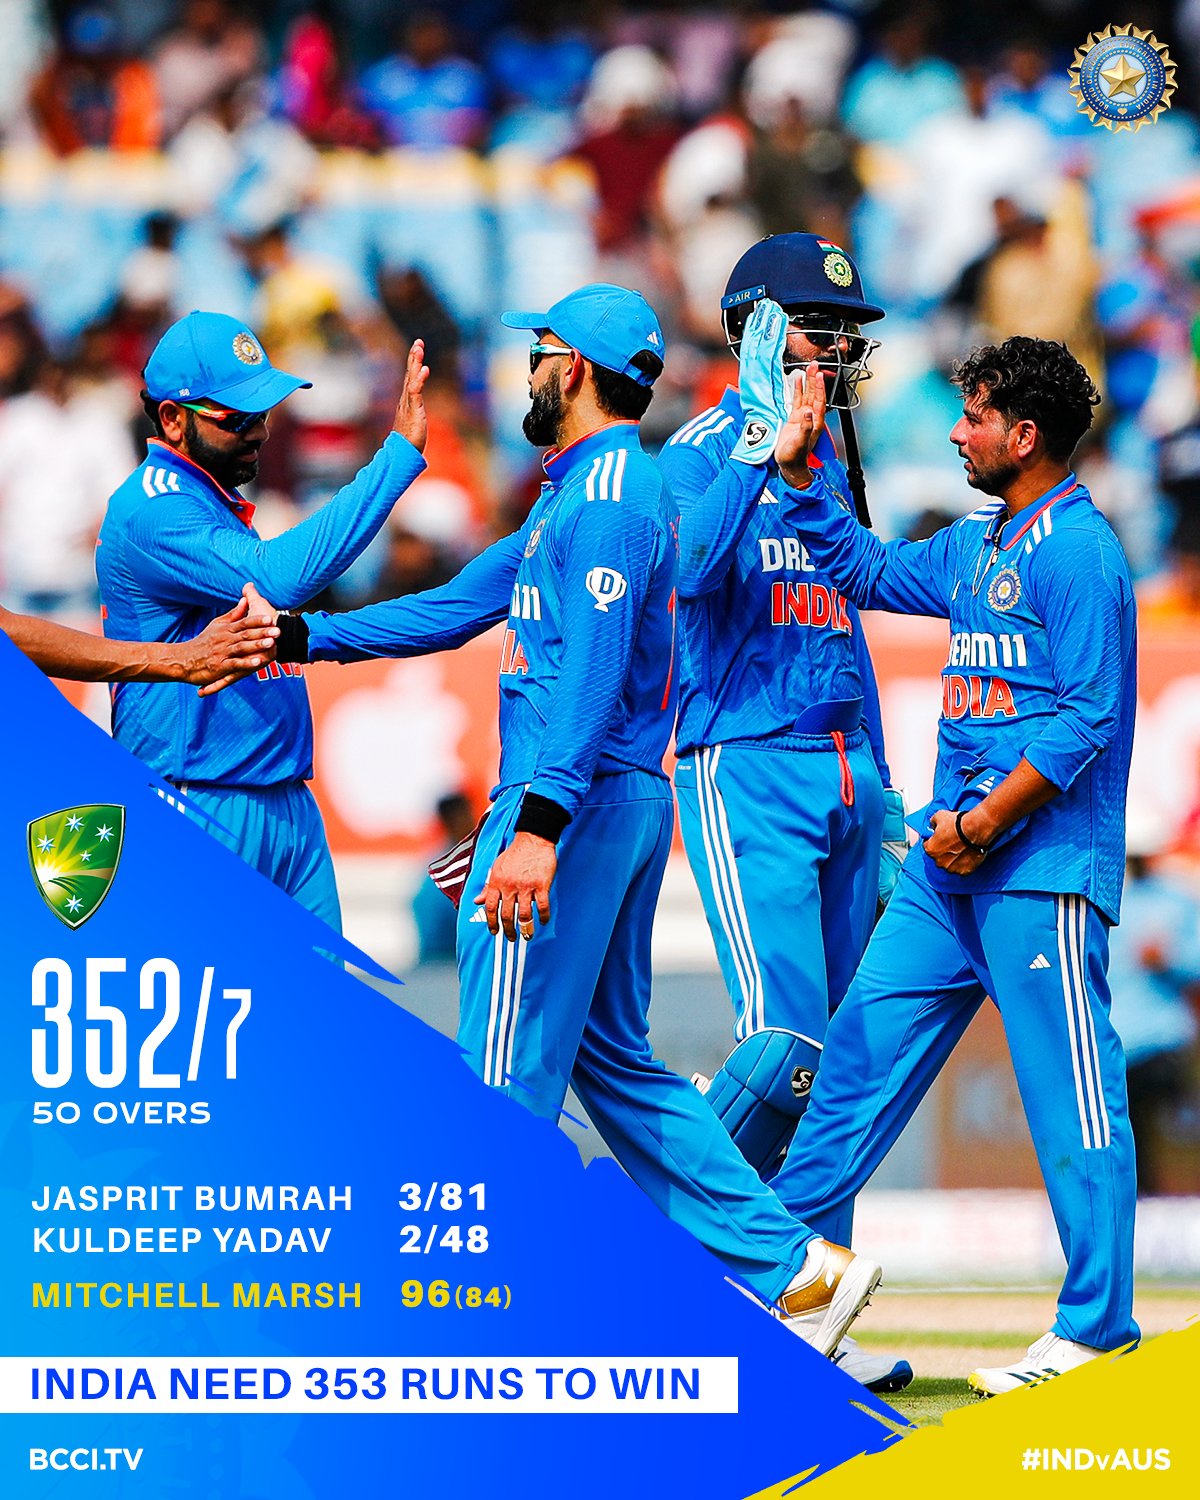 राजकोट वनडे: भारत को 'क्लीन स्वीप' के लिए ऑस्ट्रेलिया ने दी 353 रन की चुनौती